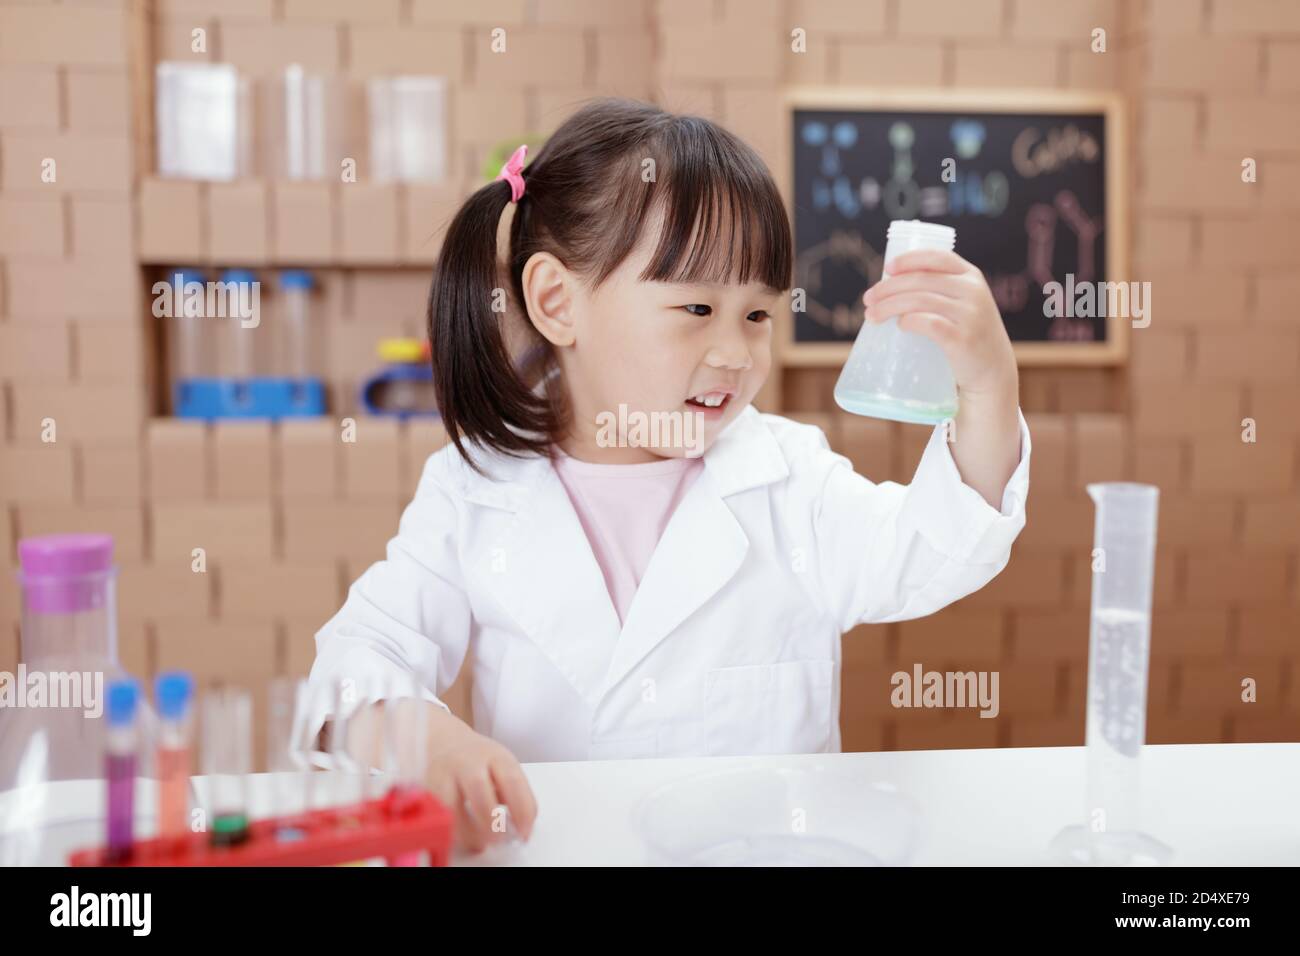 une jeune fille joue des expériences scientifiques pour la maison Banque D'Images